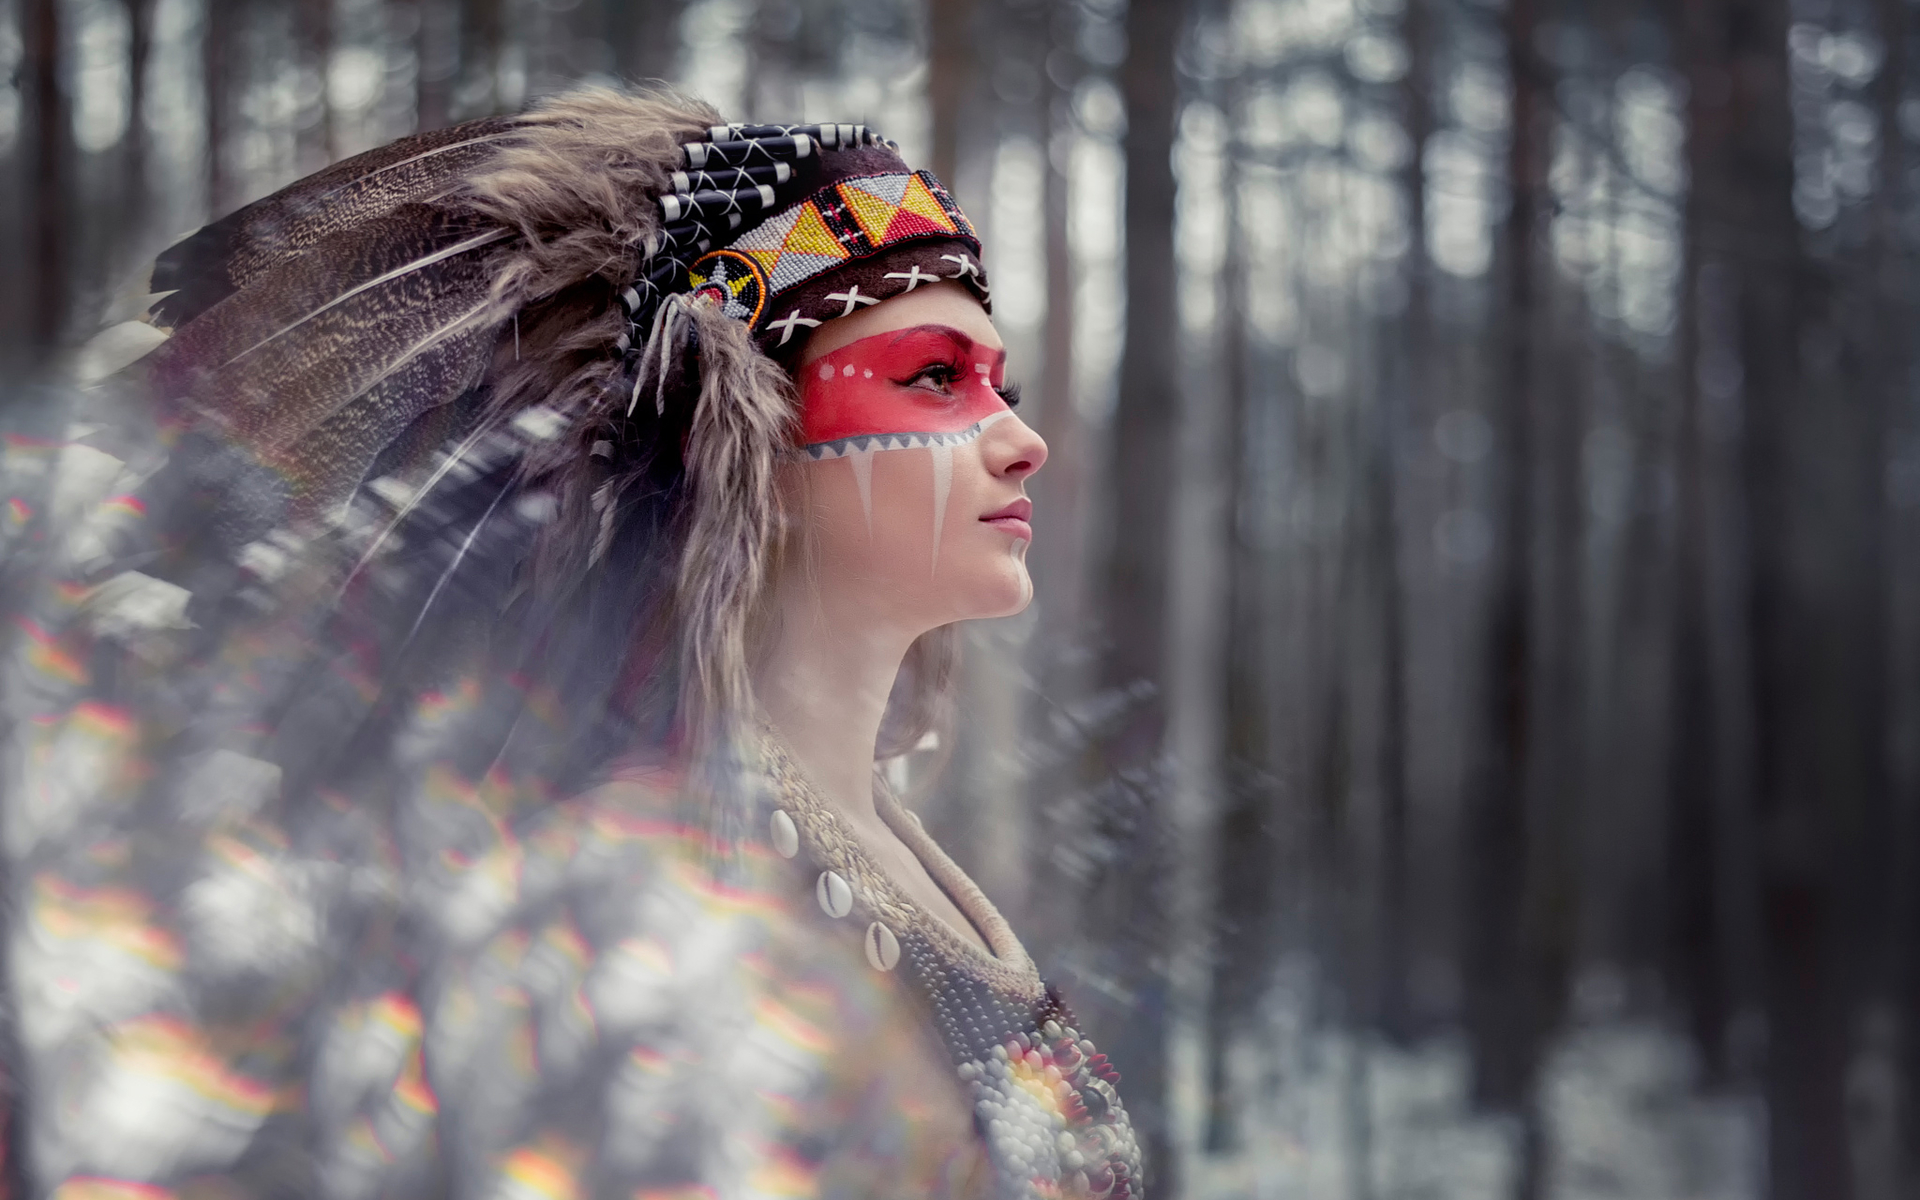 美洲印第安人部落帅哥图片 - 站长素材